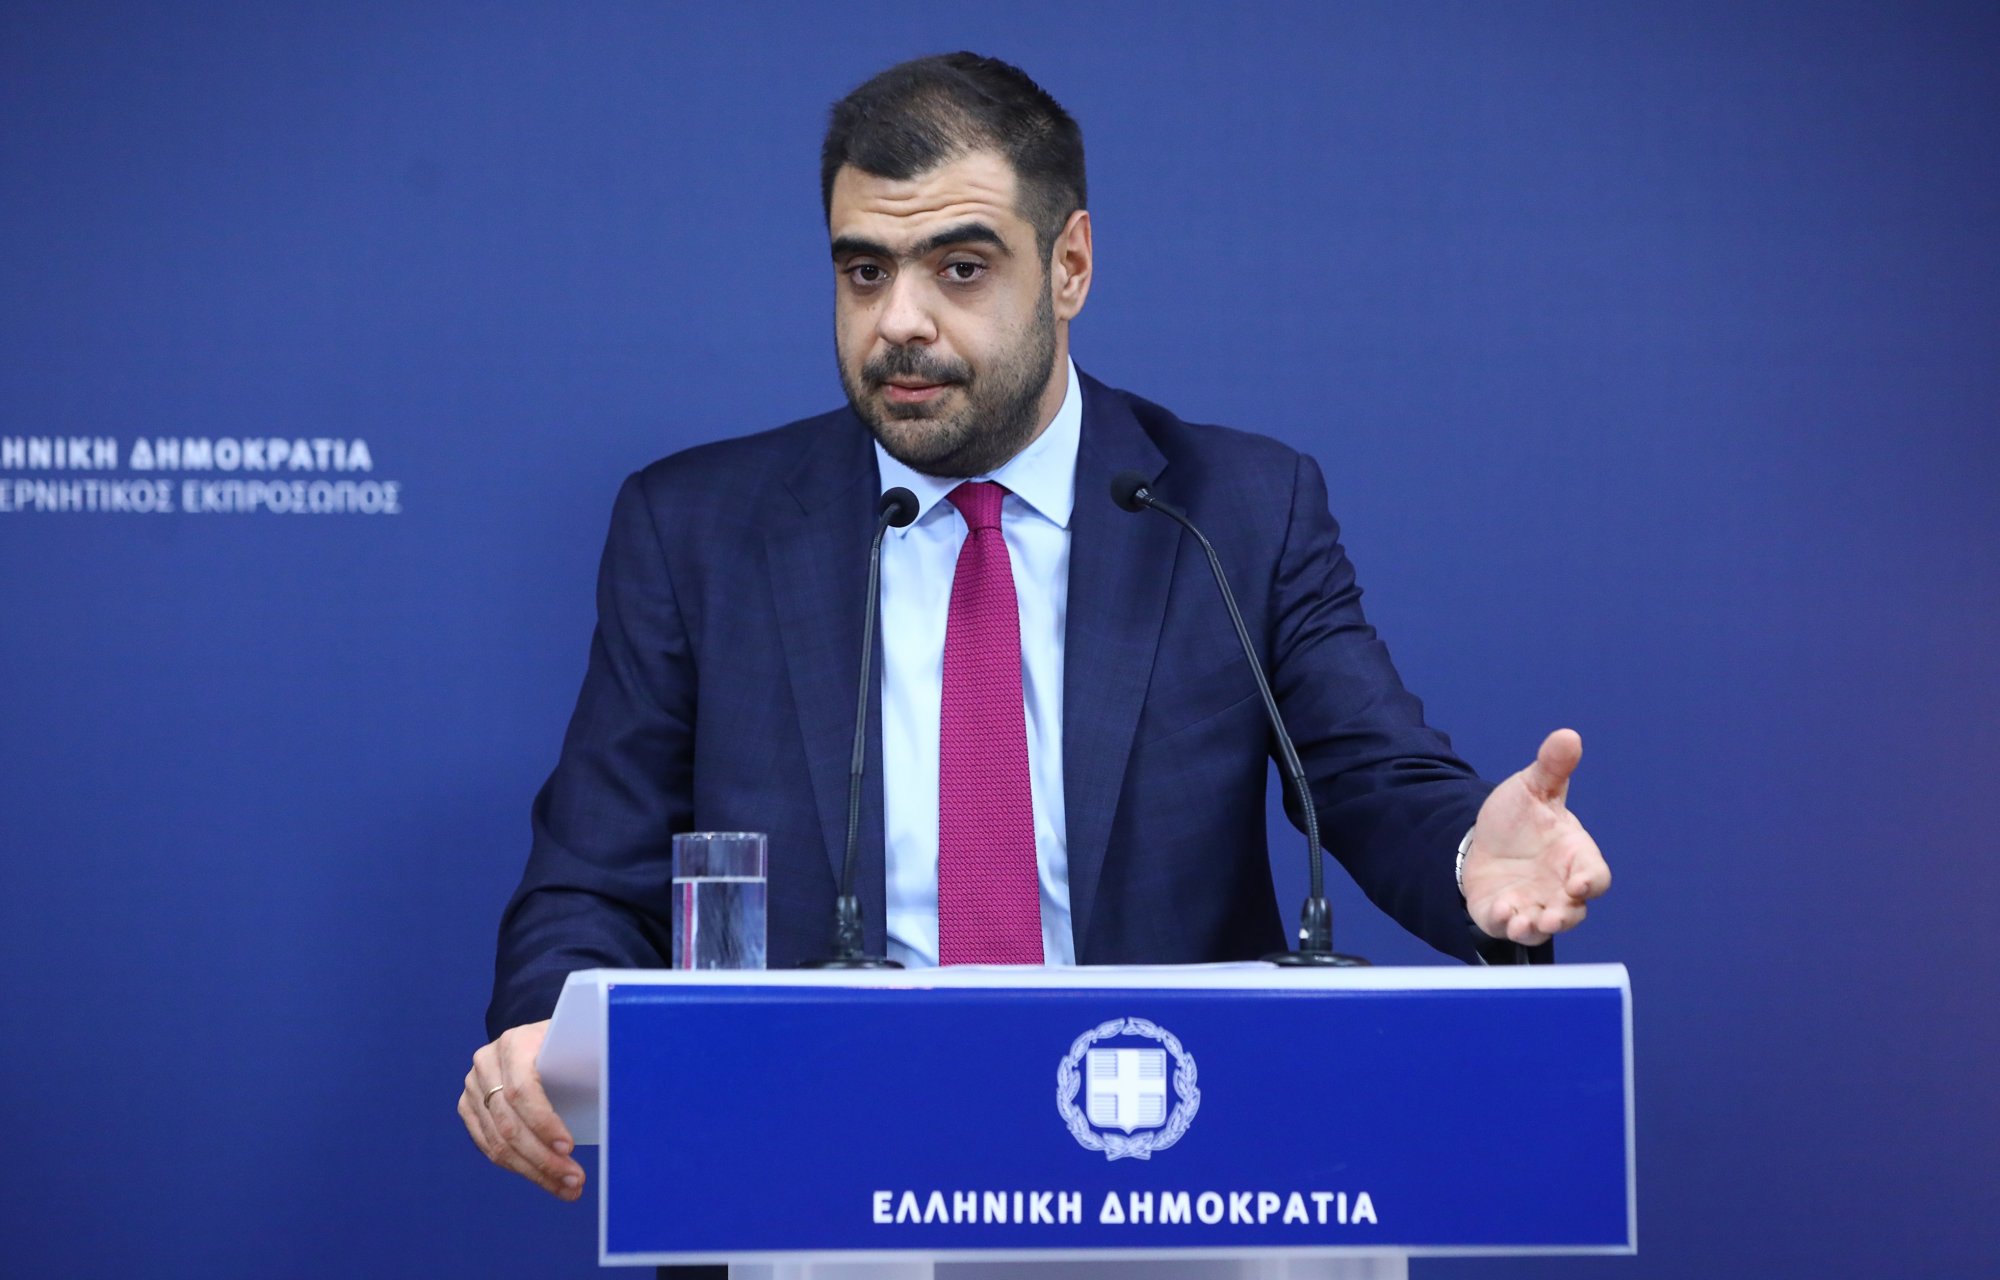 Π. Μαρινάκης: Ο Κασσελάκης θα κληθεί στην επιτροπή Οικονομικών της Βουλής για να αξιολογηθεί το πρόγραμμά του